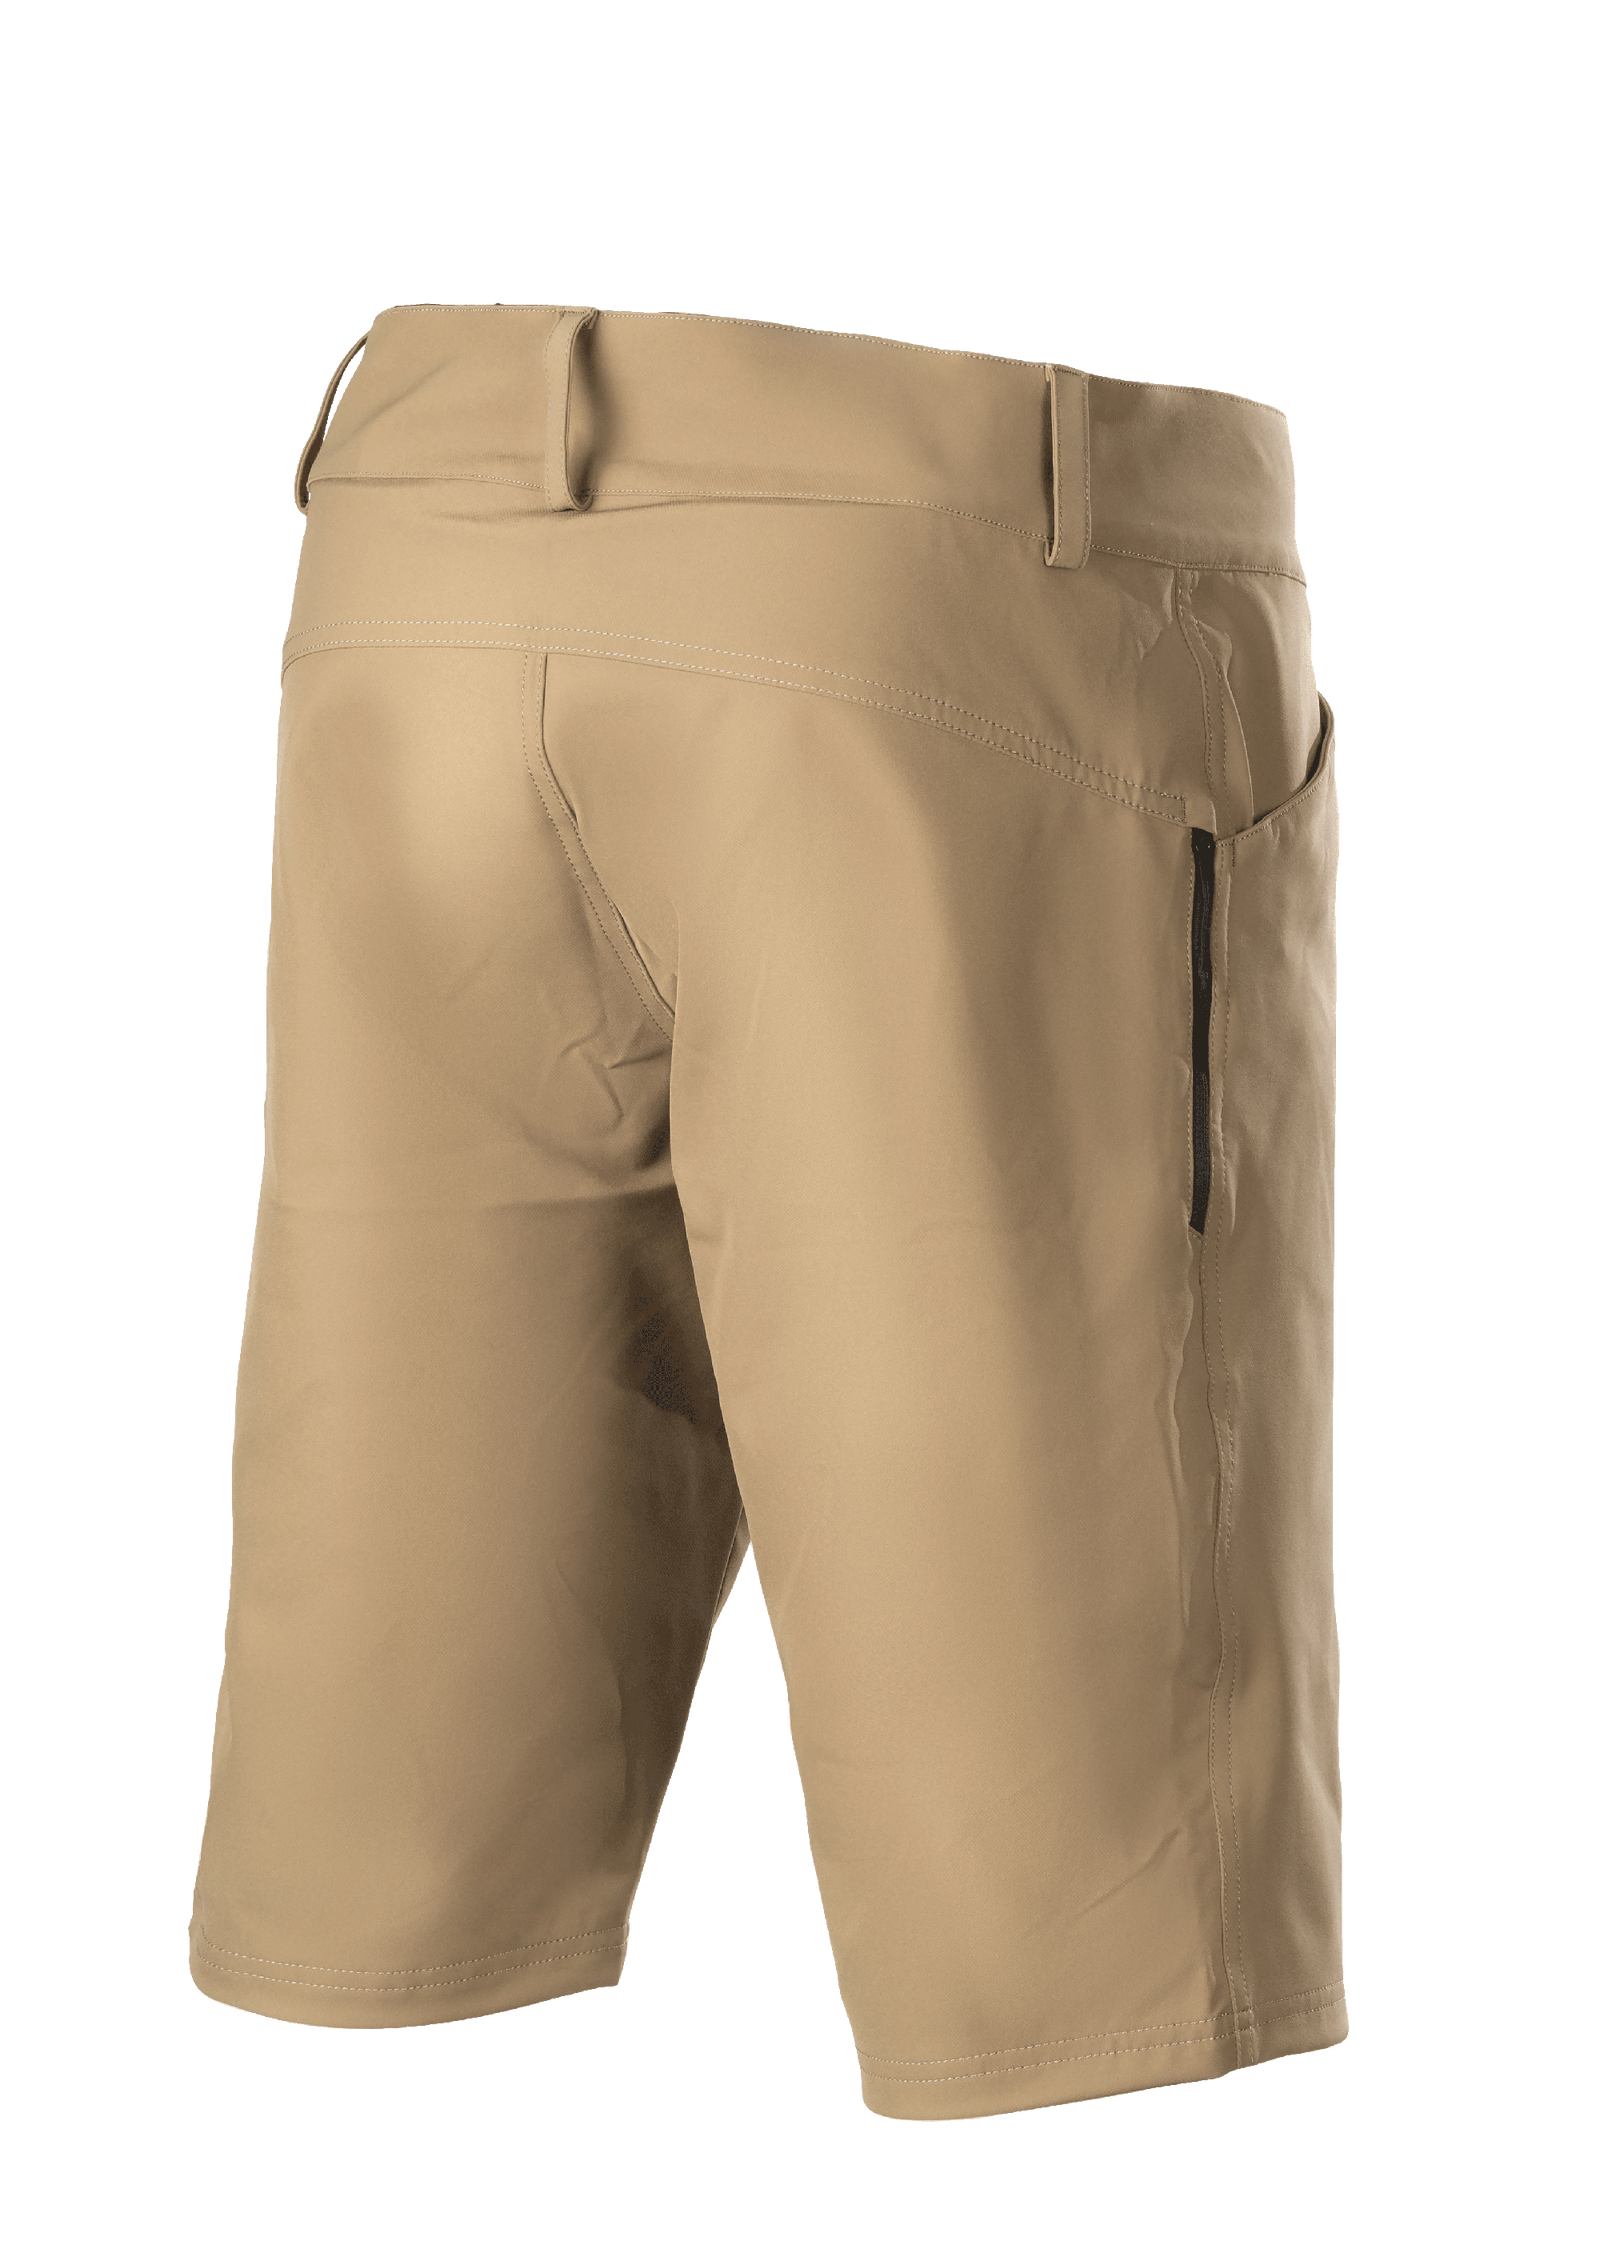 Alps Topo Pantalones cortos